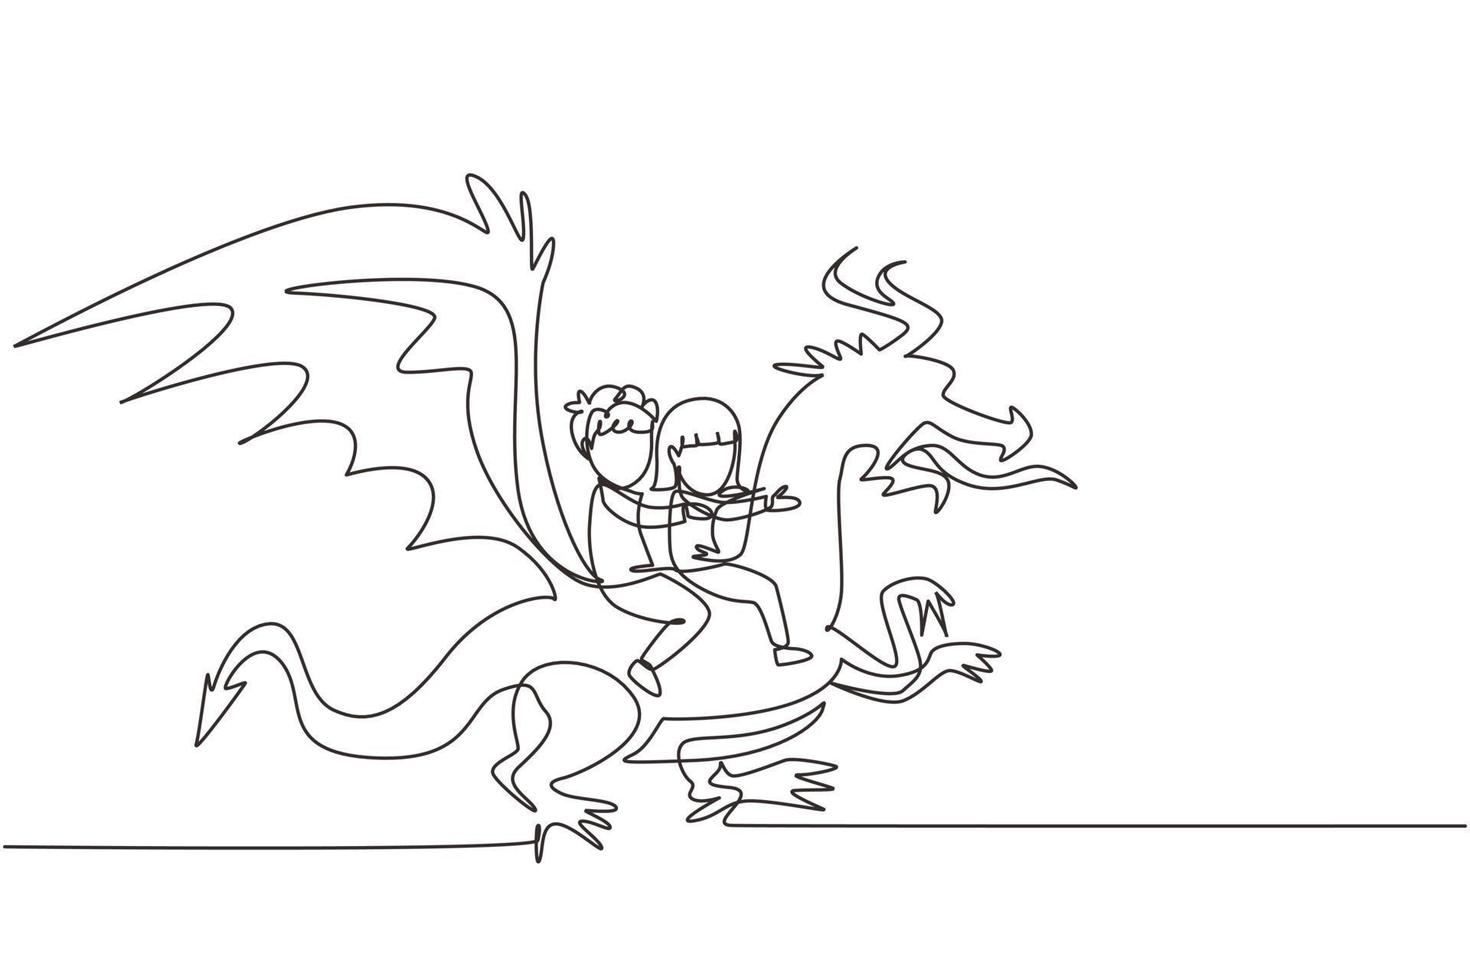 un unico disegno a tratteggio felice ragazzino e ragazza che volano insieme con il drago fantasy. i bambini volano e si siedono sul dorso del drago al cielo. fiaba immaginaria per bambini. vettore di disegno a linea continua